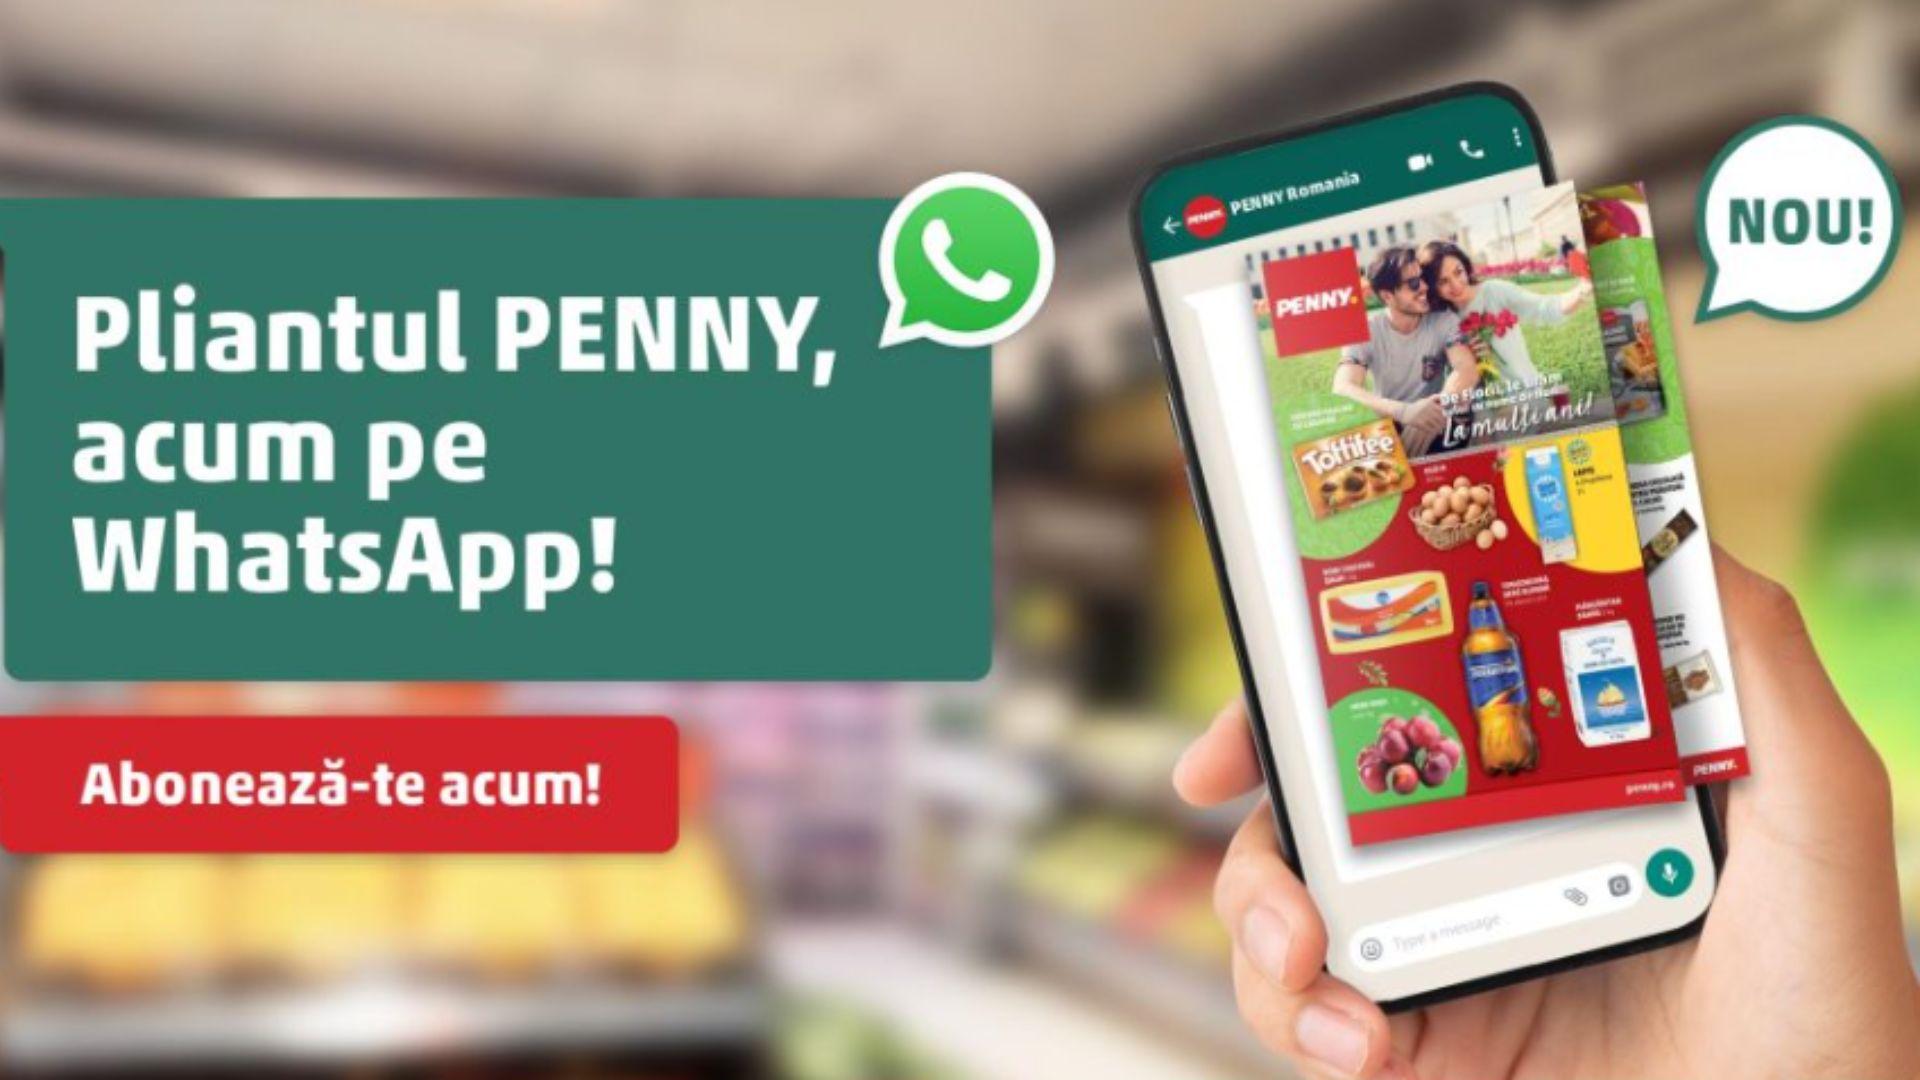 (P) PENNY introduce pliantul digital disponibil pe telefonul mobil prin aplicația WhatsApp. Ce avantaje au clienții